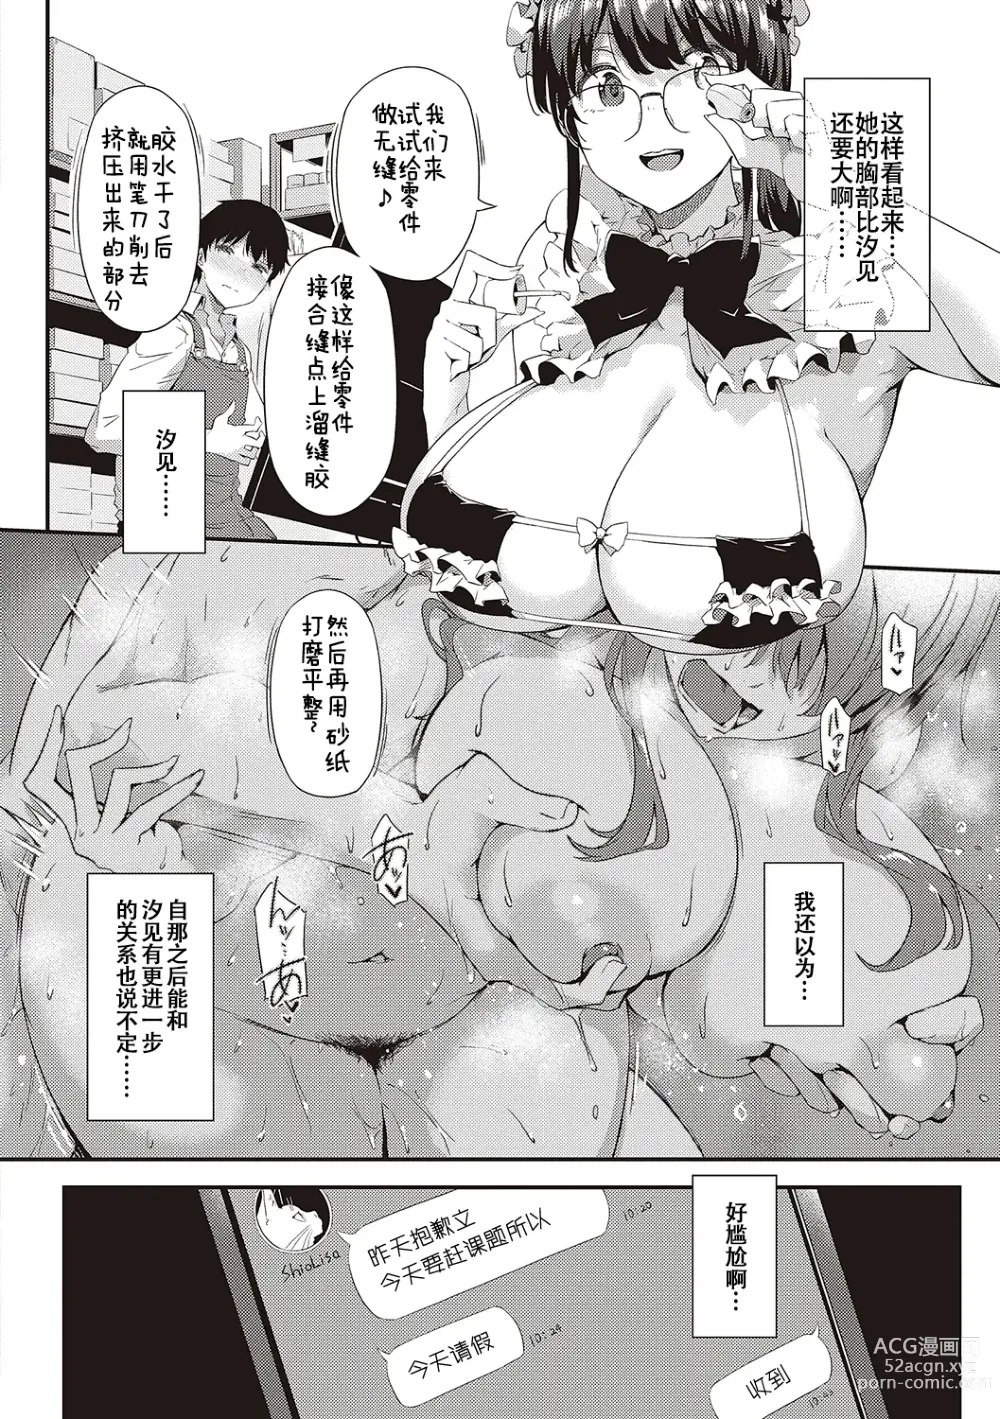 Page 35 of manga Shiranai Koto Shiritai no?